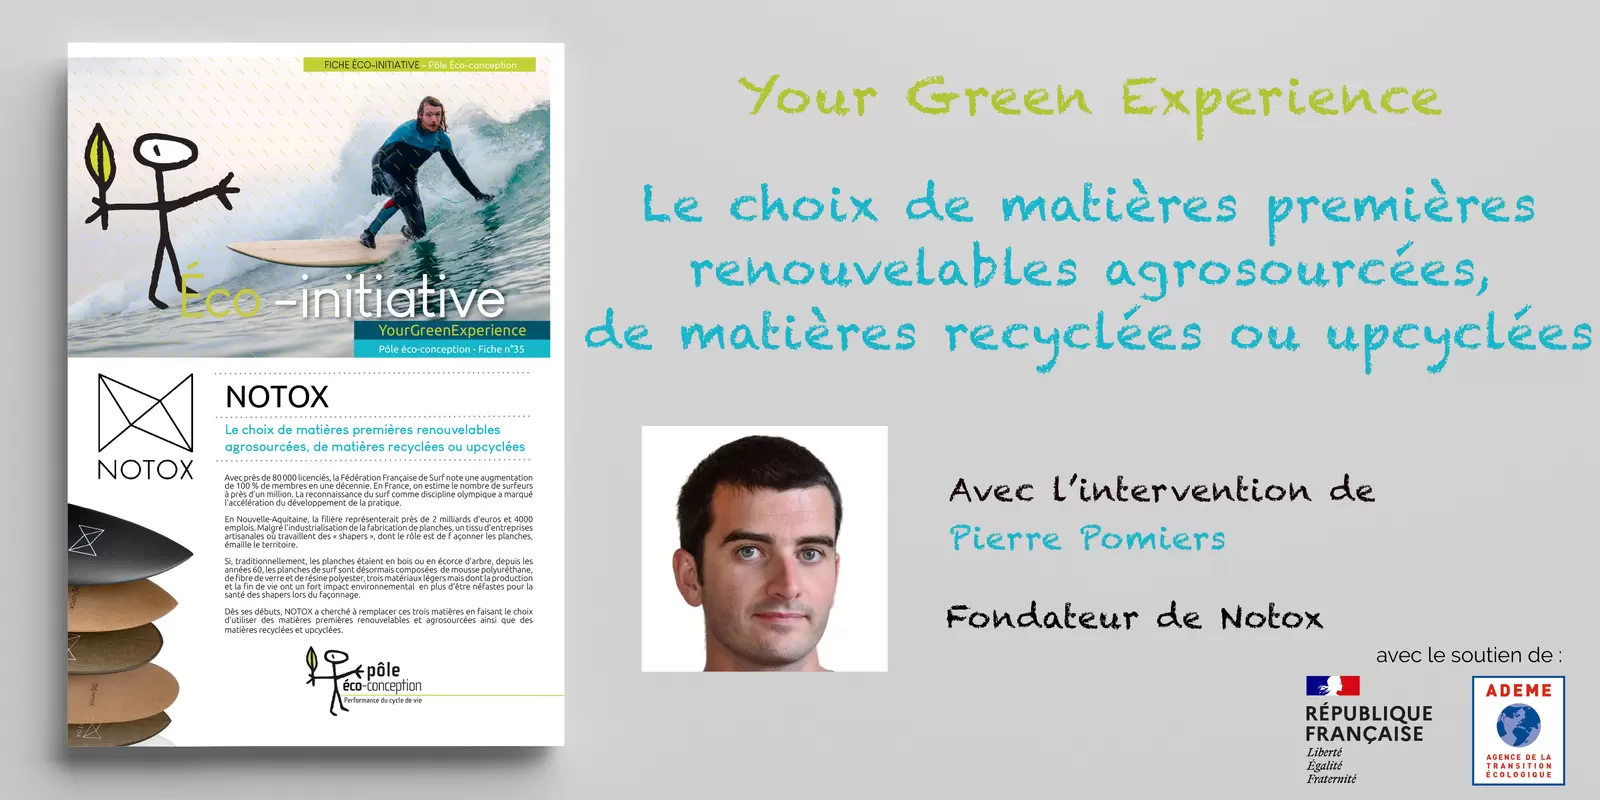 [REPLAY] Your Green Experience - Notox : Le choix de matières premières renouvelables agrosourcées, de matières recyclées ou upcyclées 